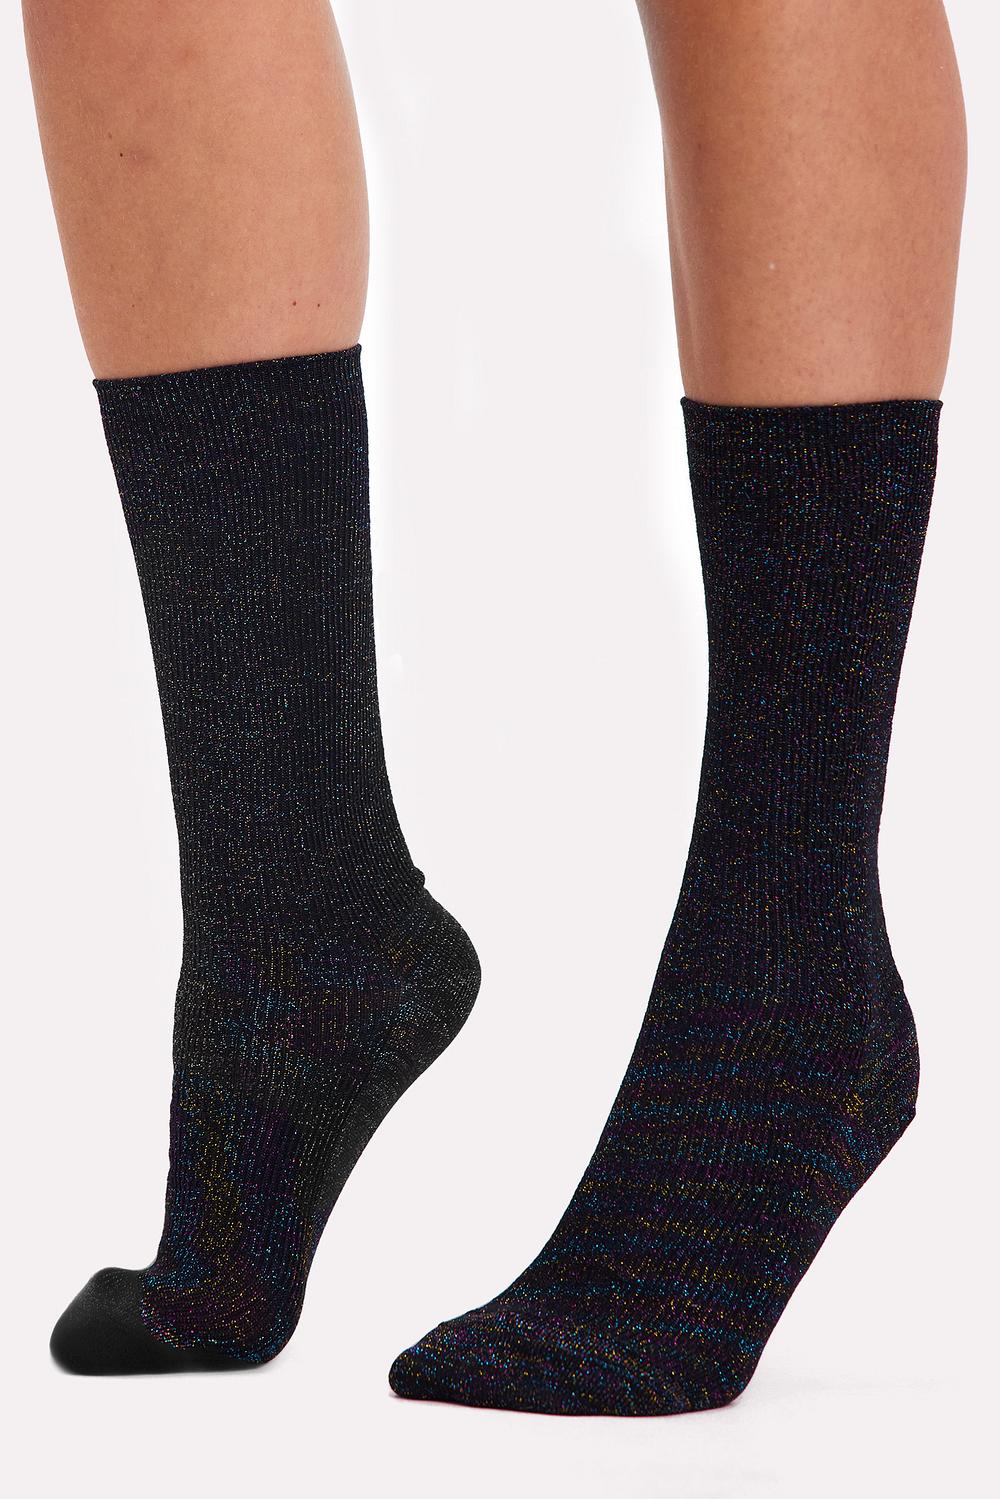 Venta al por mayos calcetines negros calcetines de tubo de otoño e invierno  para mujer al por mayor calcetines de cachemira cálidos retro - Nihaojewelry